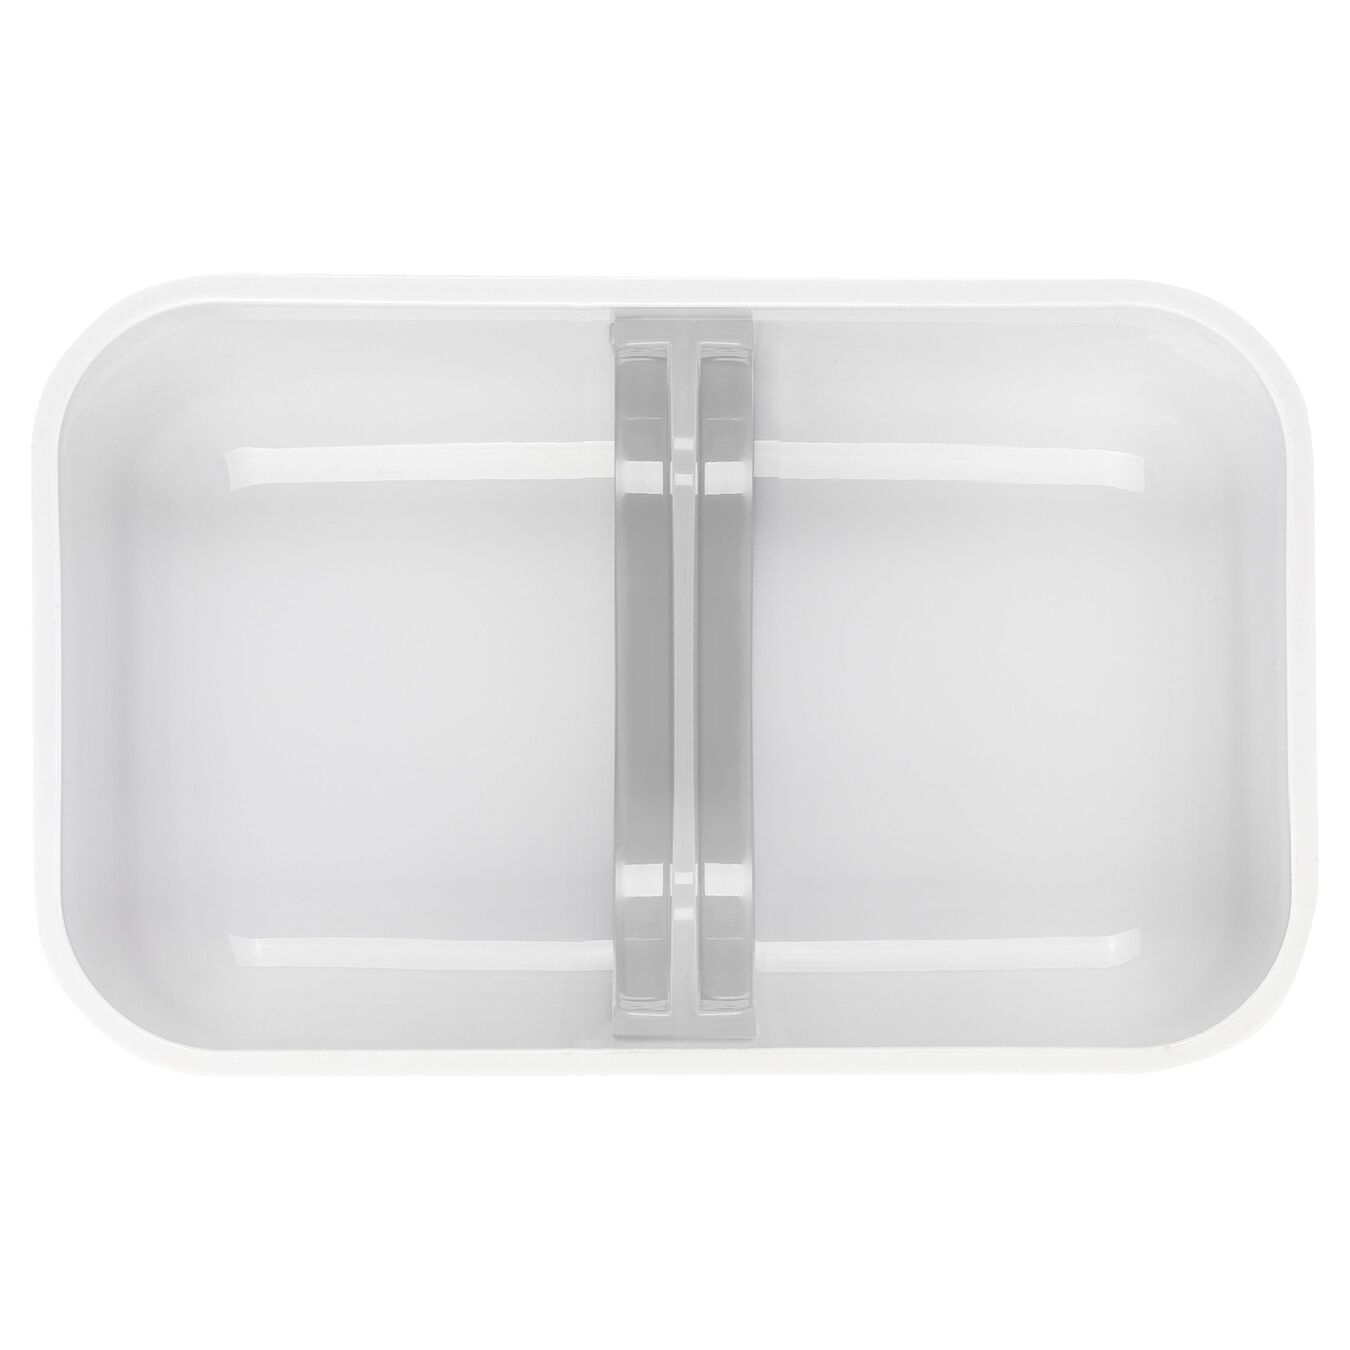 Lunch box sottovuoto L, plastica, bianco-grigio,,large 4